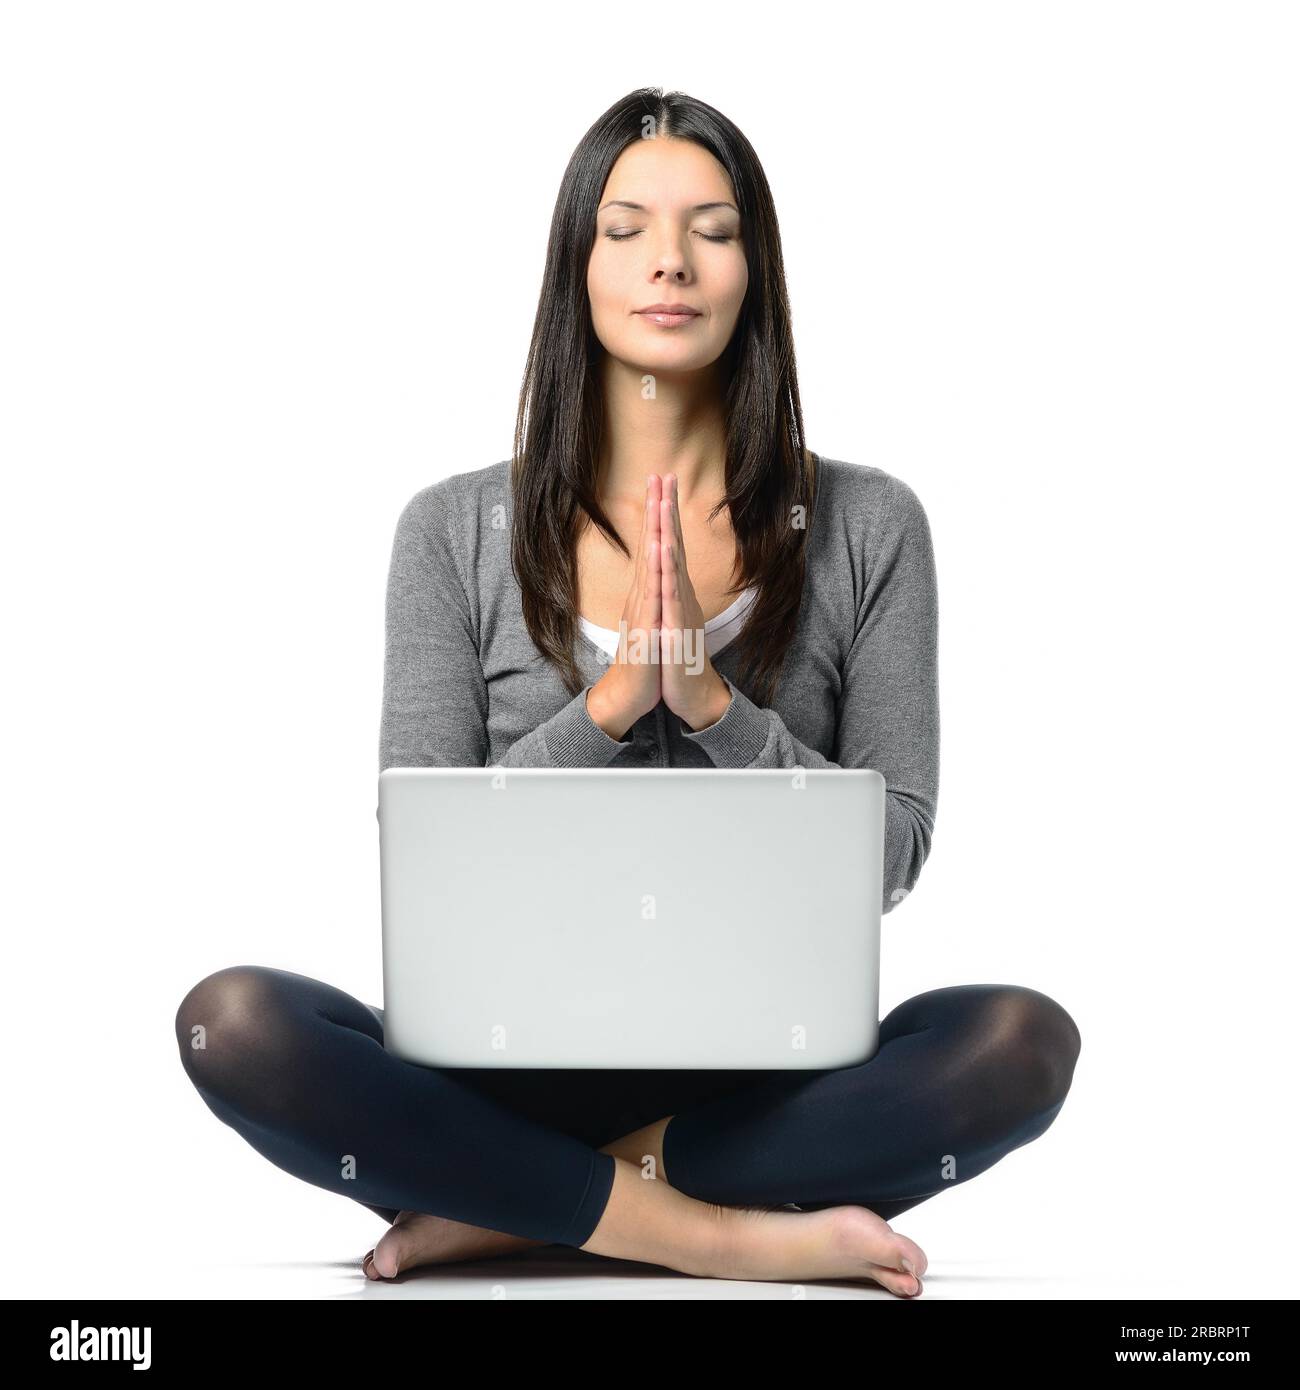 Jolie femme aux cheveux longs en posture méditante avec les yeux fermés et les jambes croisées tout en faisant face à un ordinateur portable en face. Isolé sur fond blanc Banque D'Images